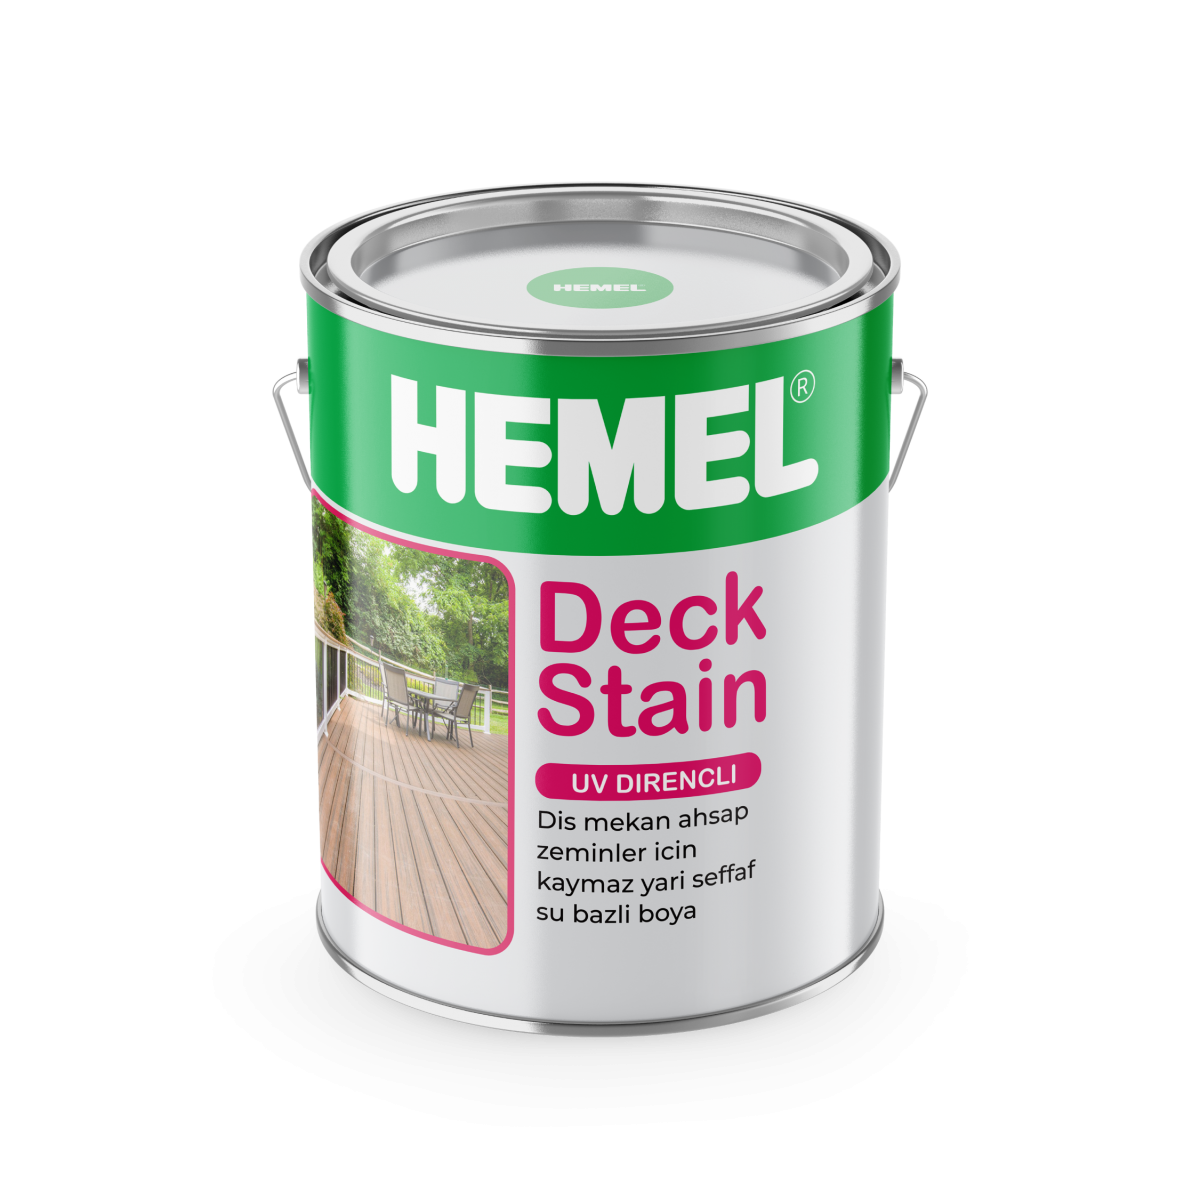 رنگ کف و نما (Deck stain) مخصوص فضای خارجی